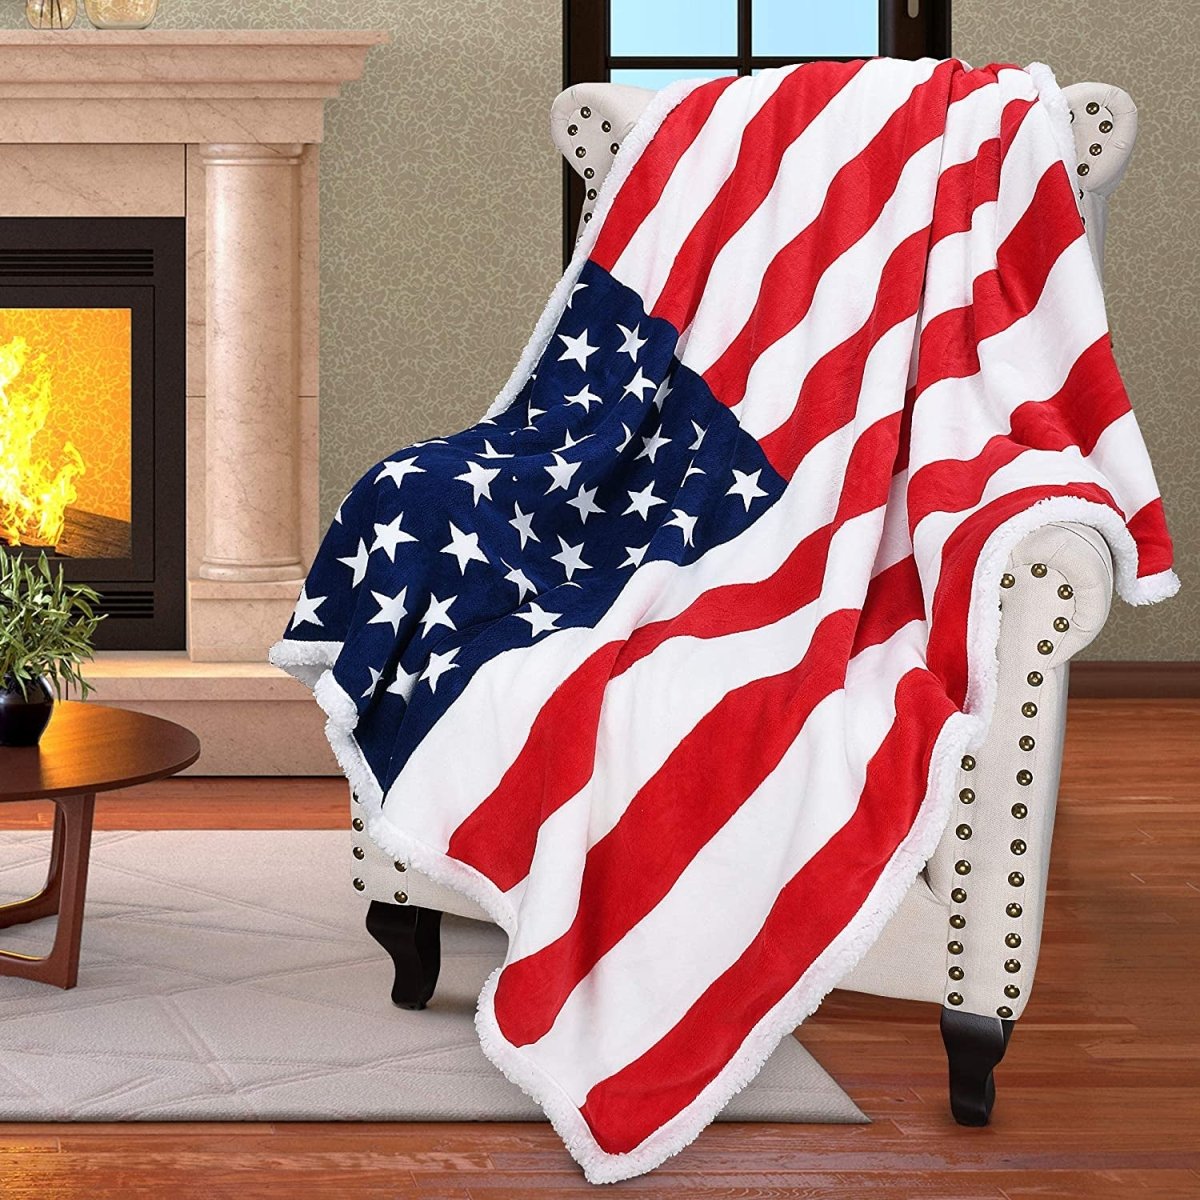 Patriotic US Flag Blanket - American National Flag Sherpa Fleece Reversible Throw